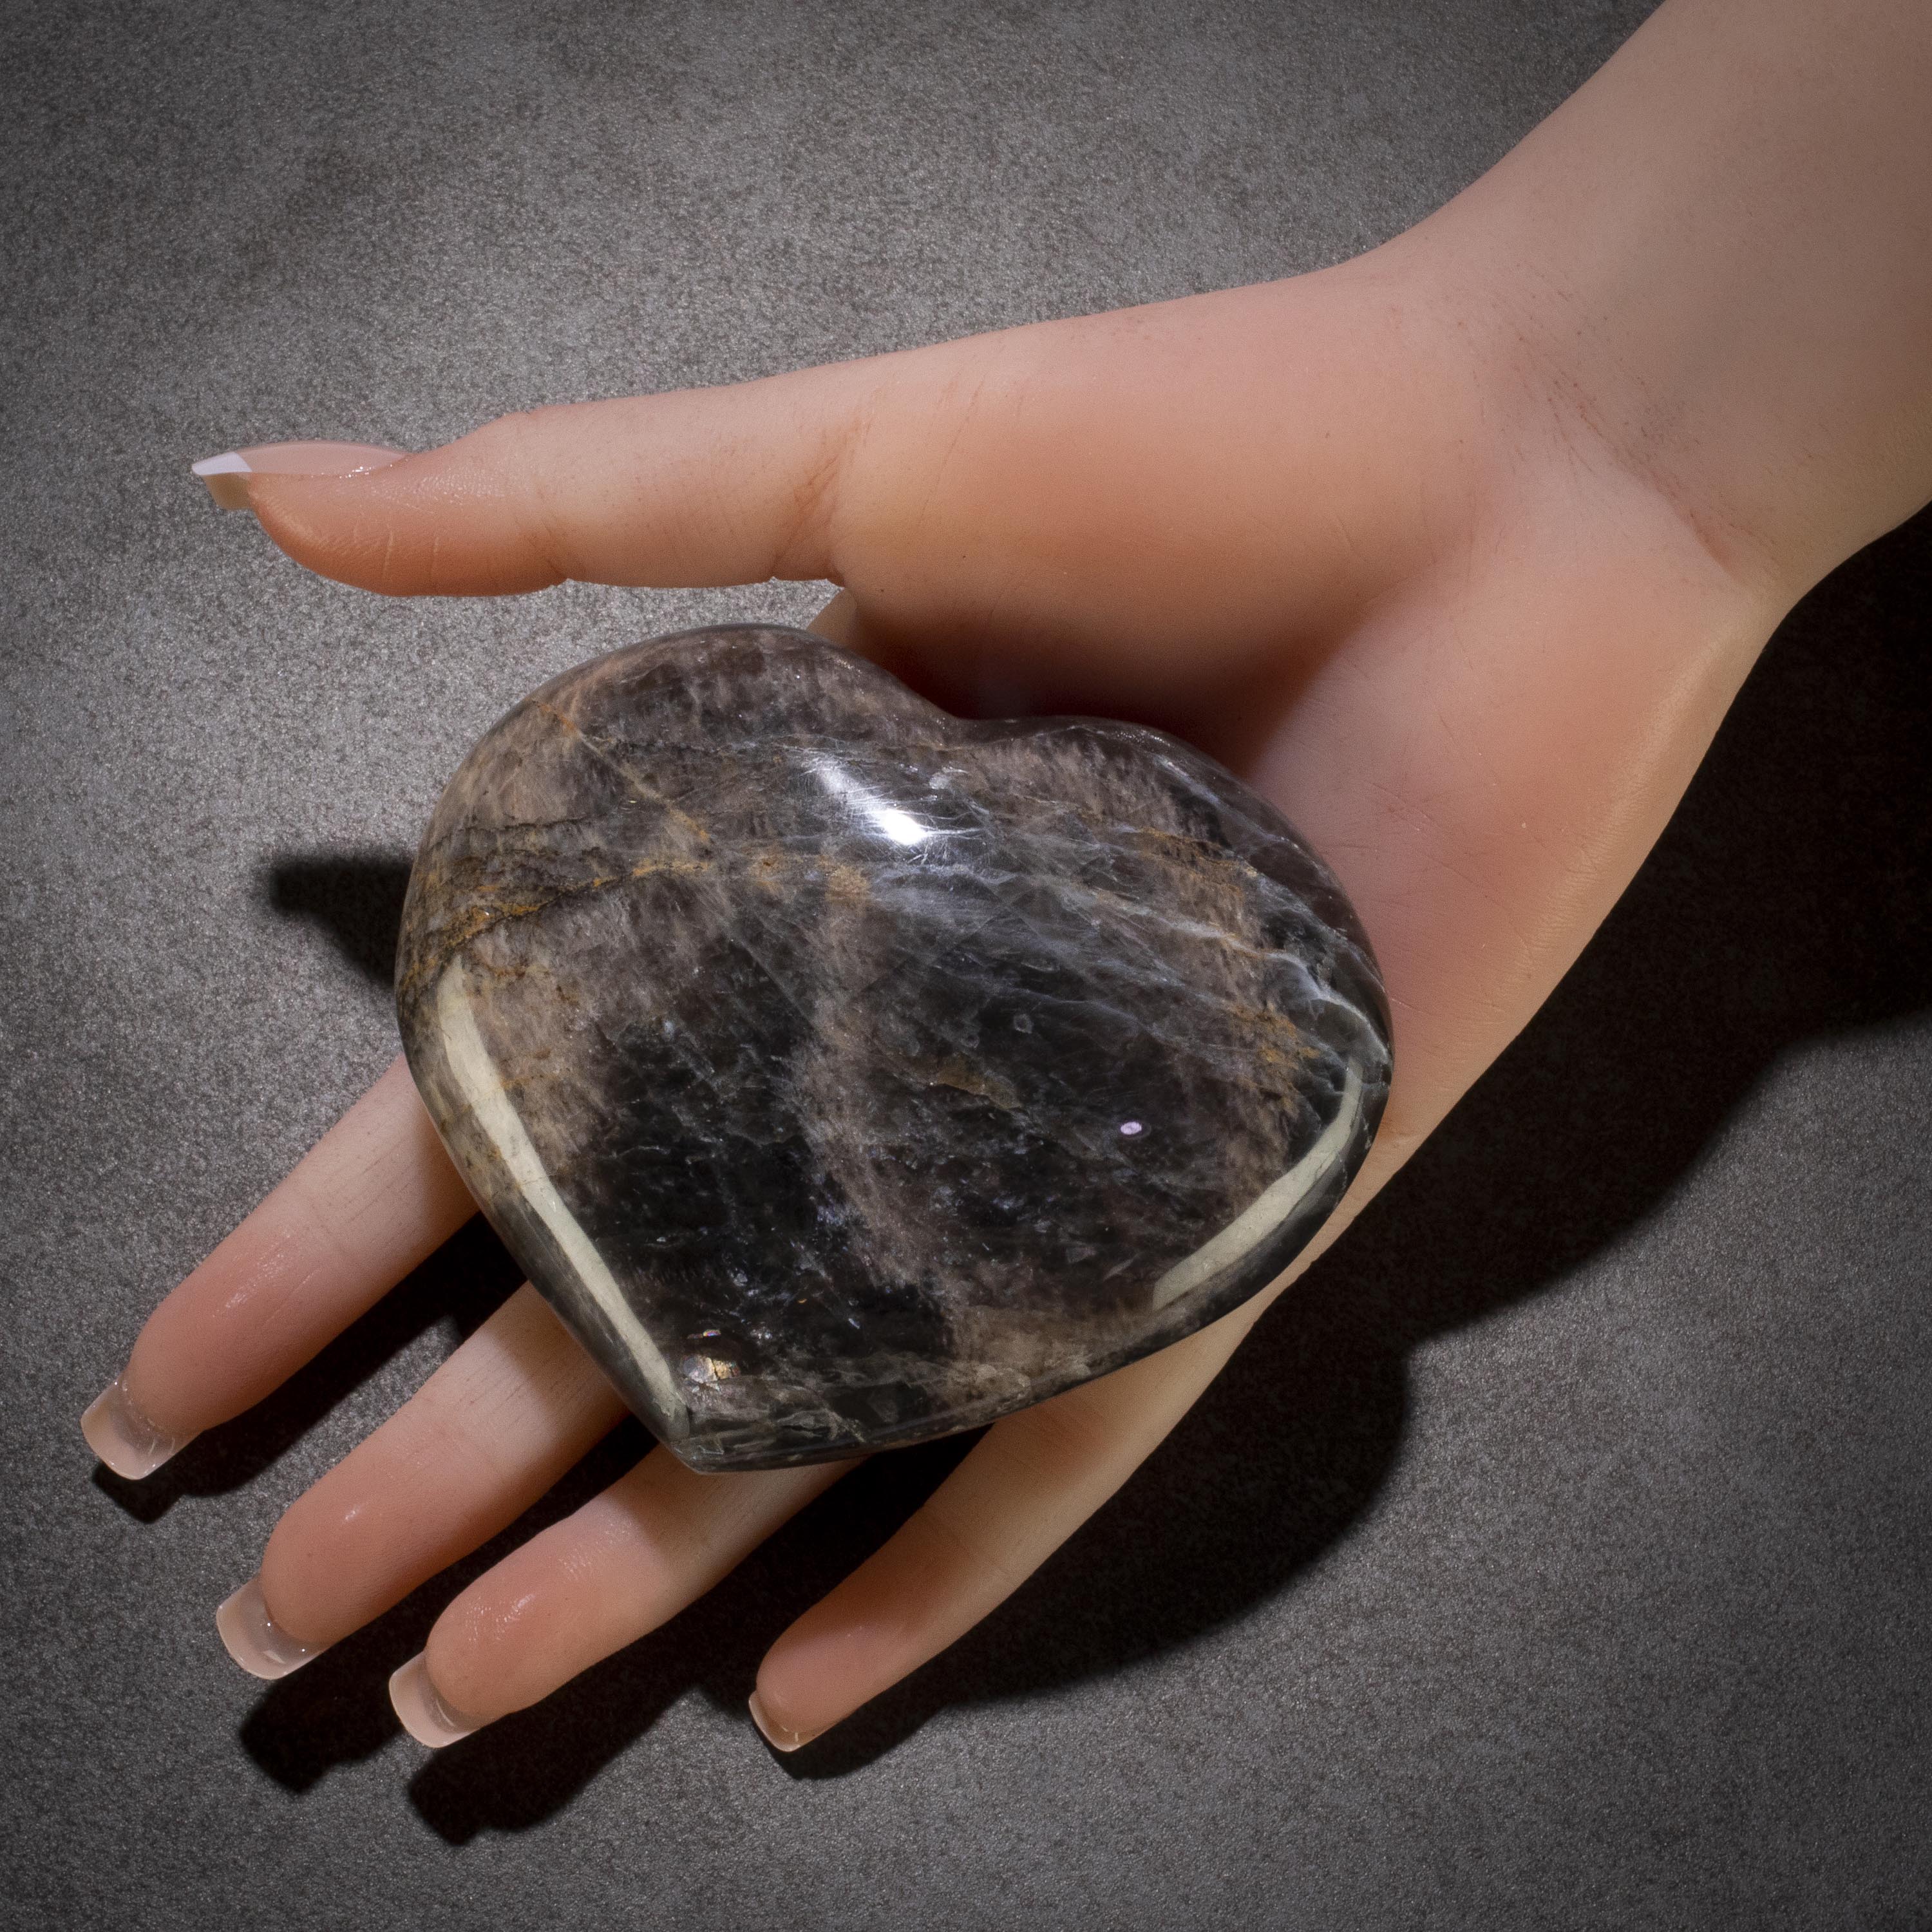 KALIFANO Black Moonstone Black Moonstone Gemstone Heart Carving 350g / 4in. GH300-BM